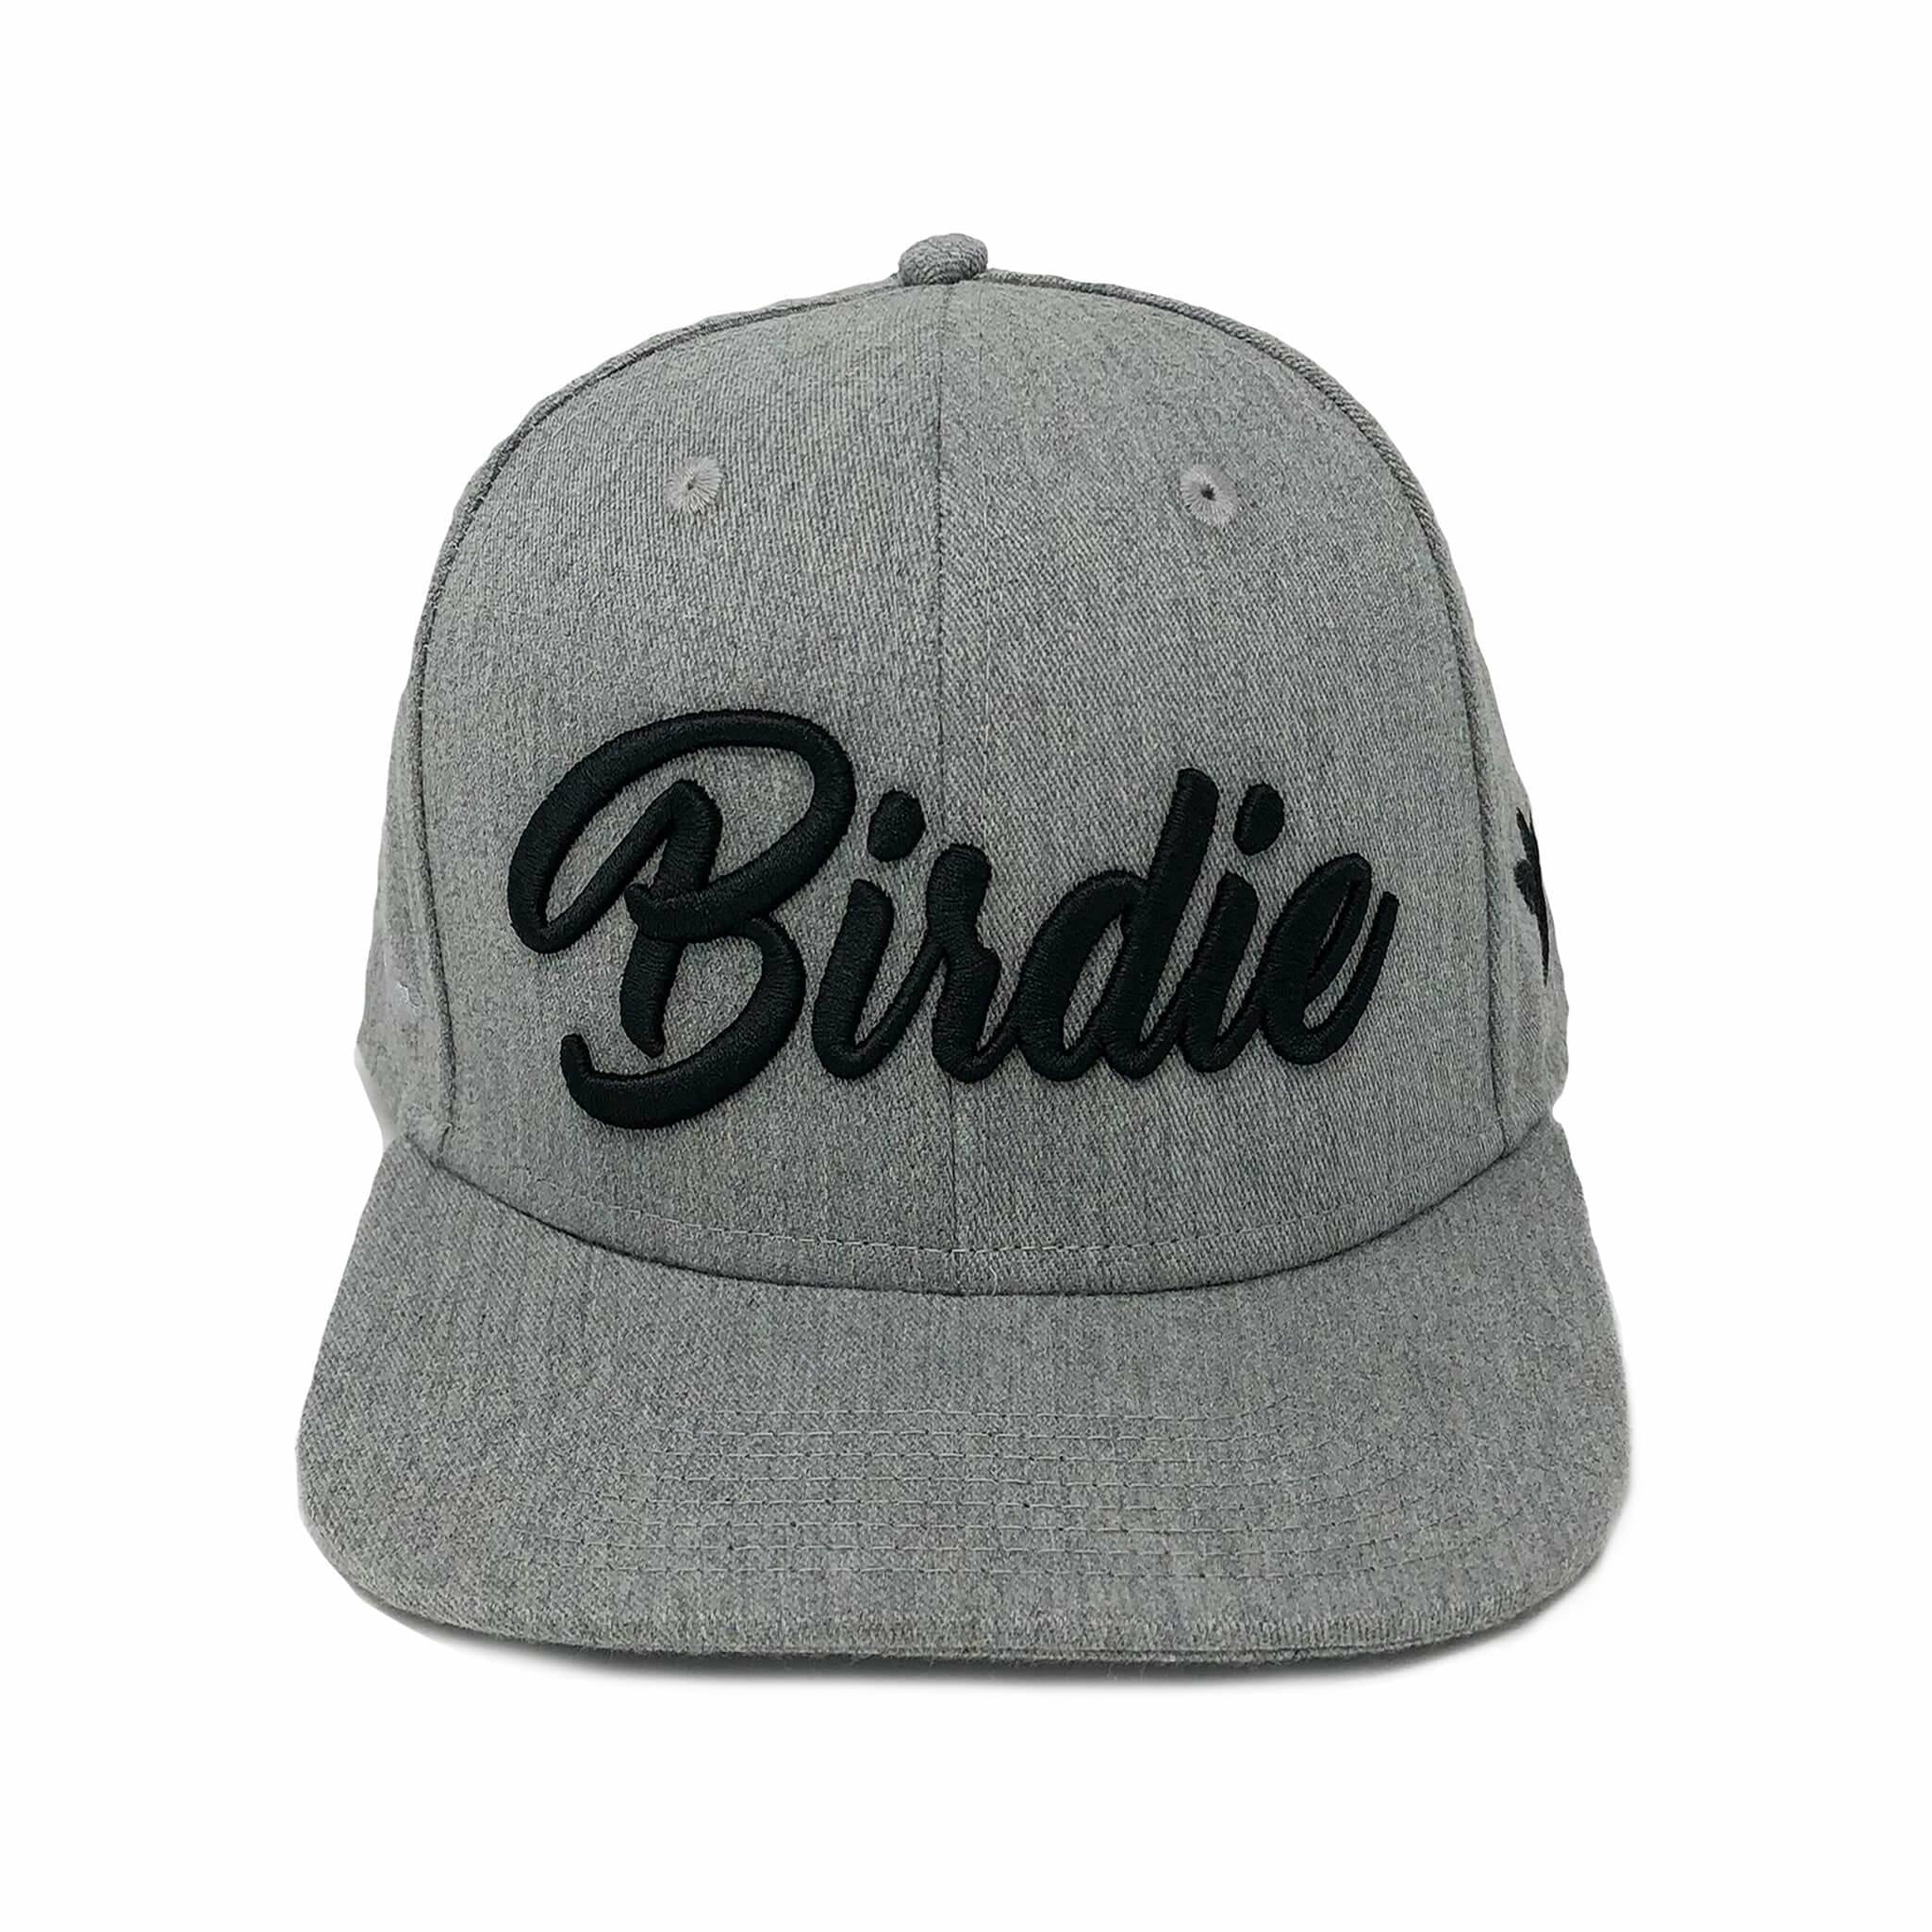 Birdie Hat - Grey on Black - Birdie Threads